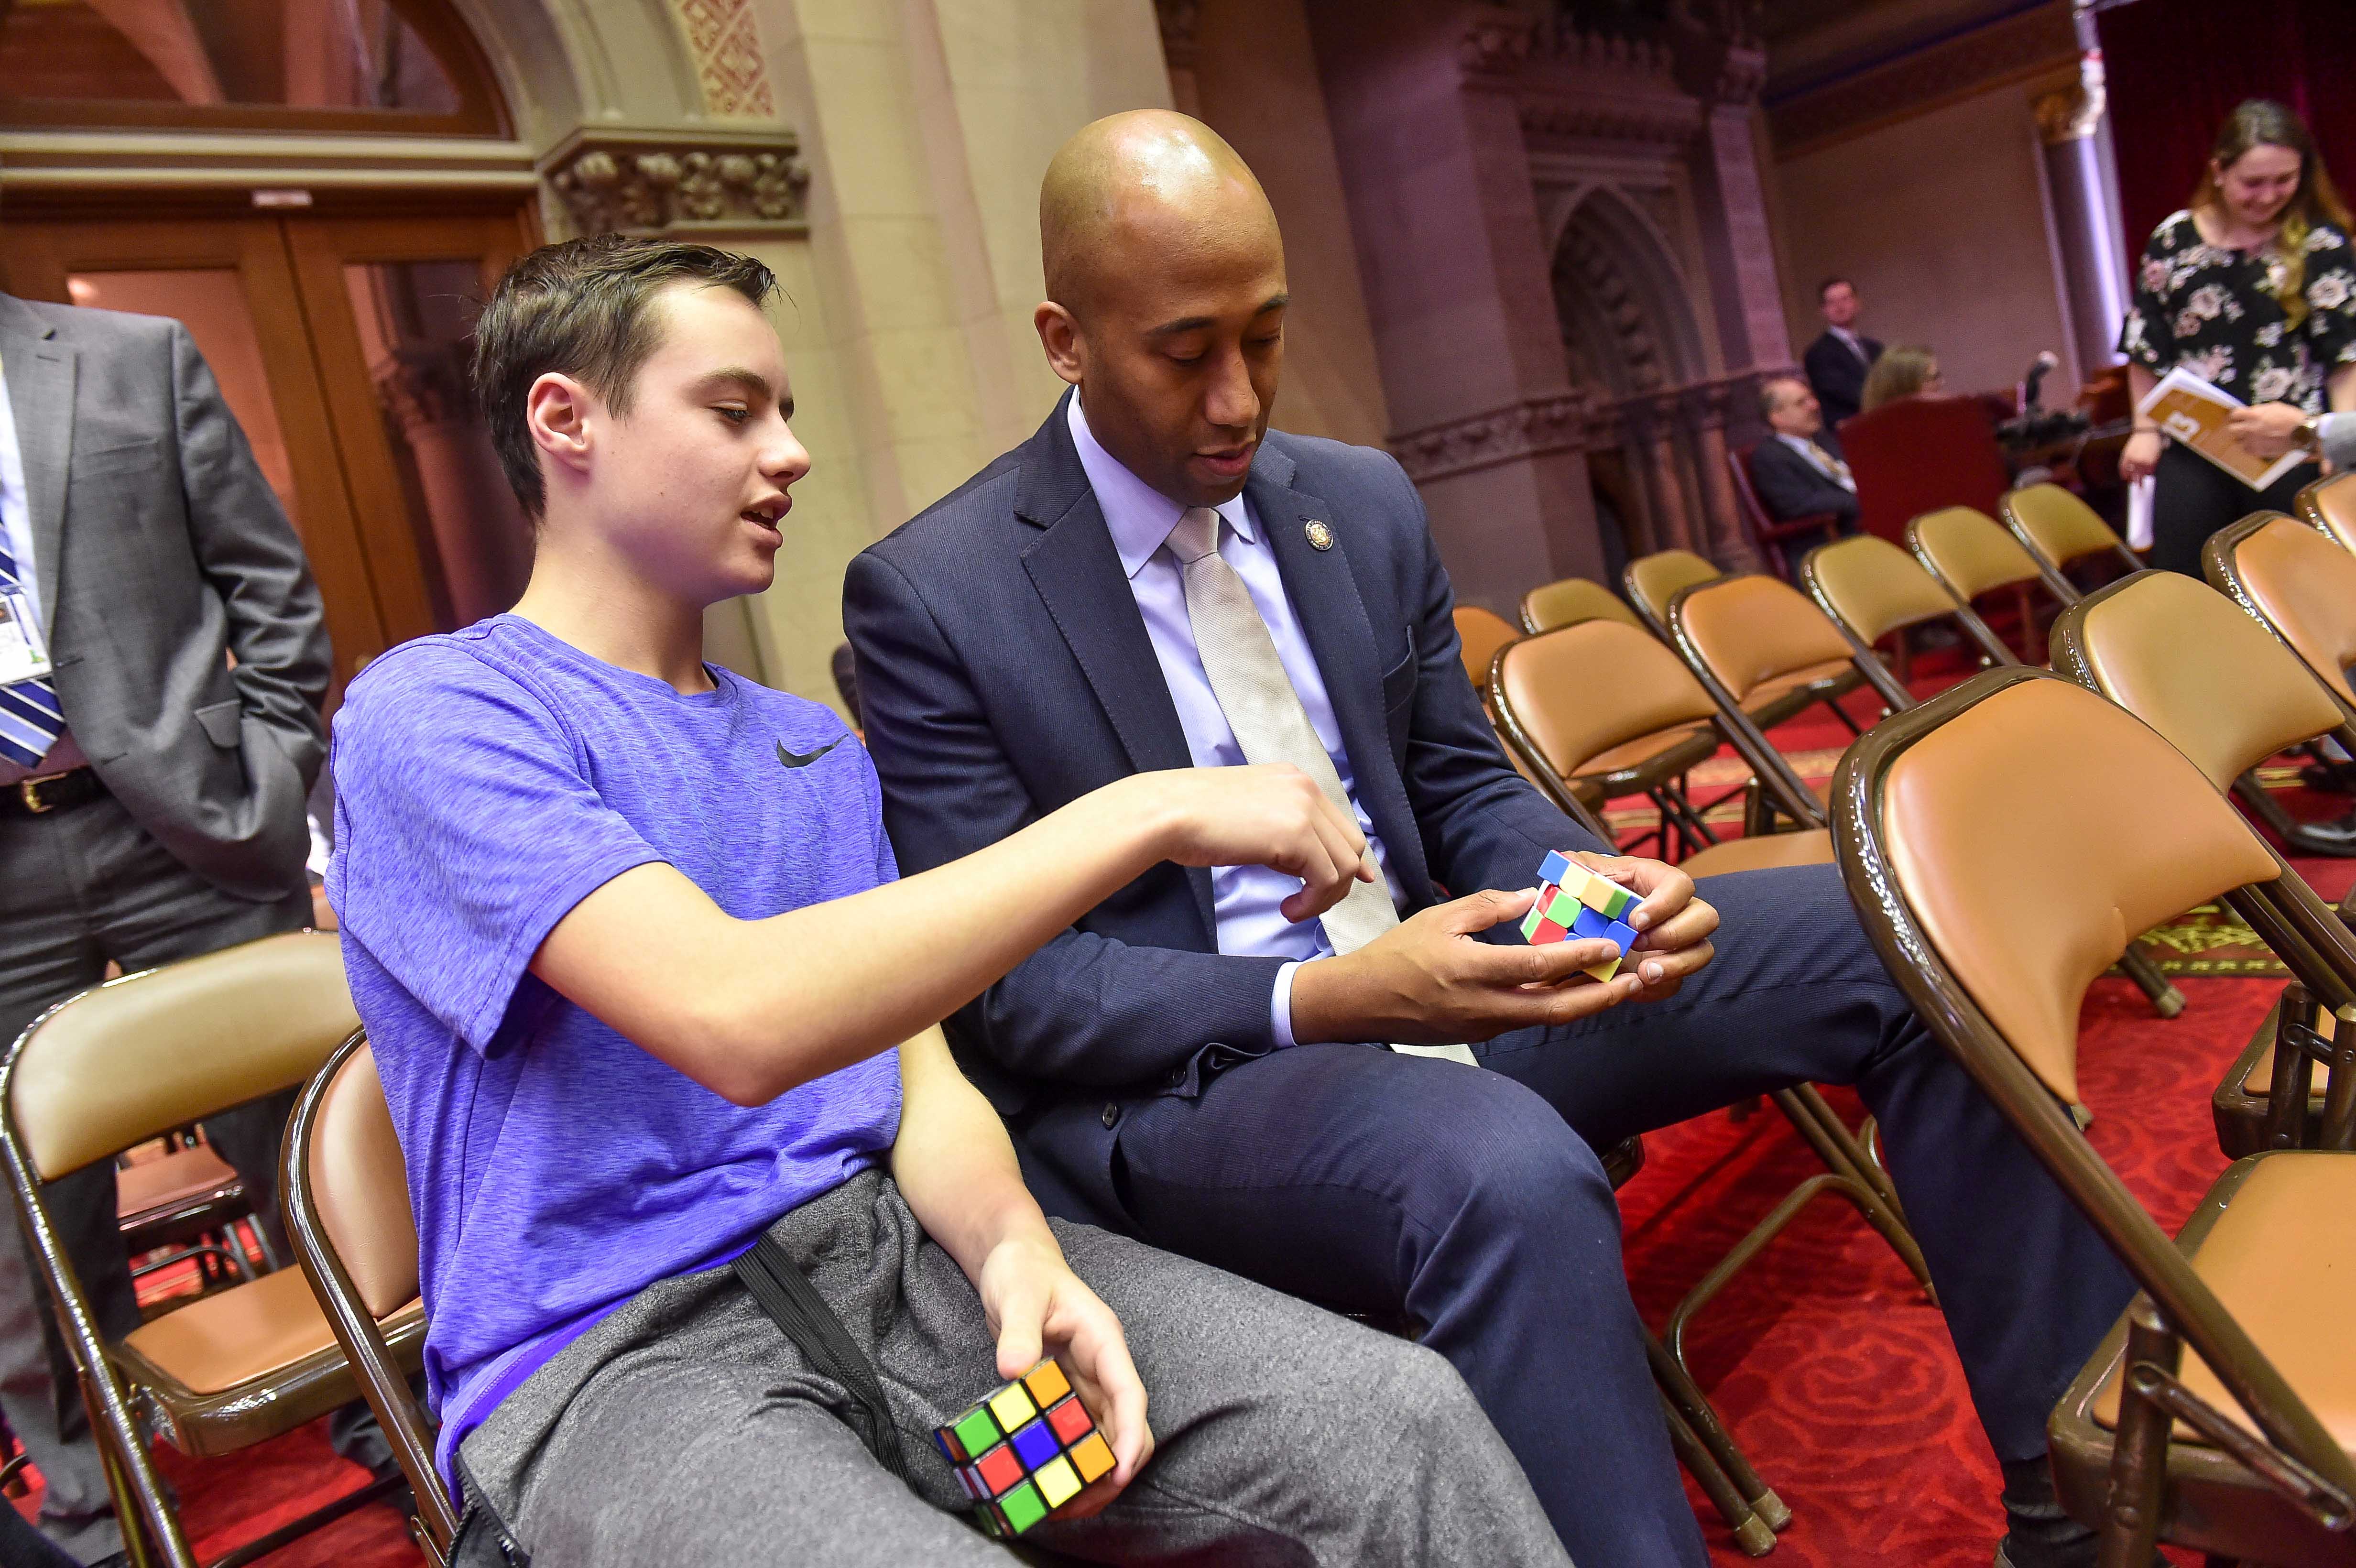 Assembly member Vanel bonding over Rubik’s cubes